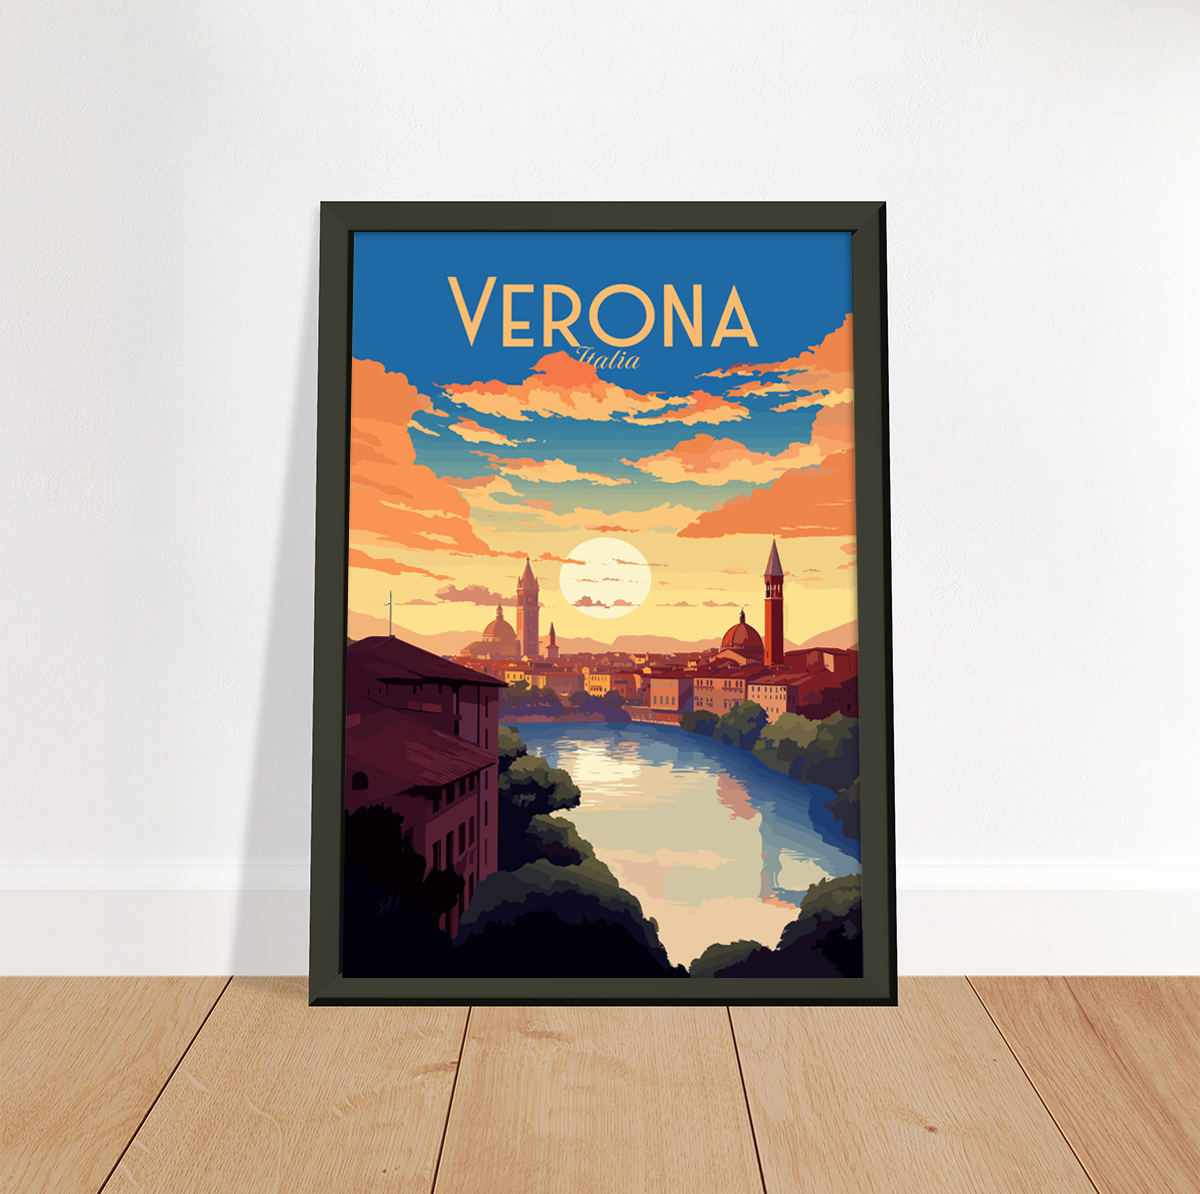 Verona poster by bon voyage design